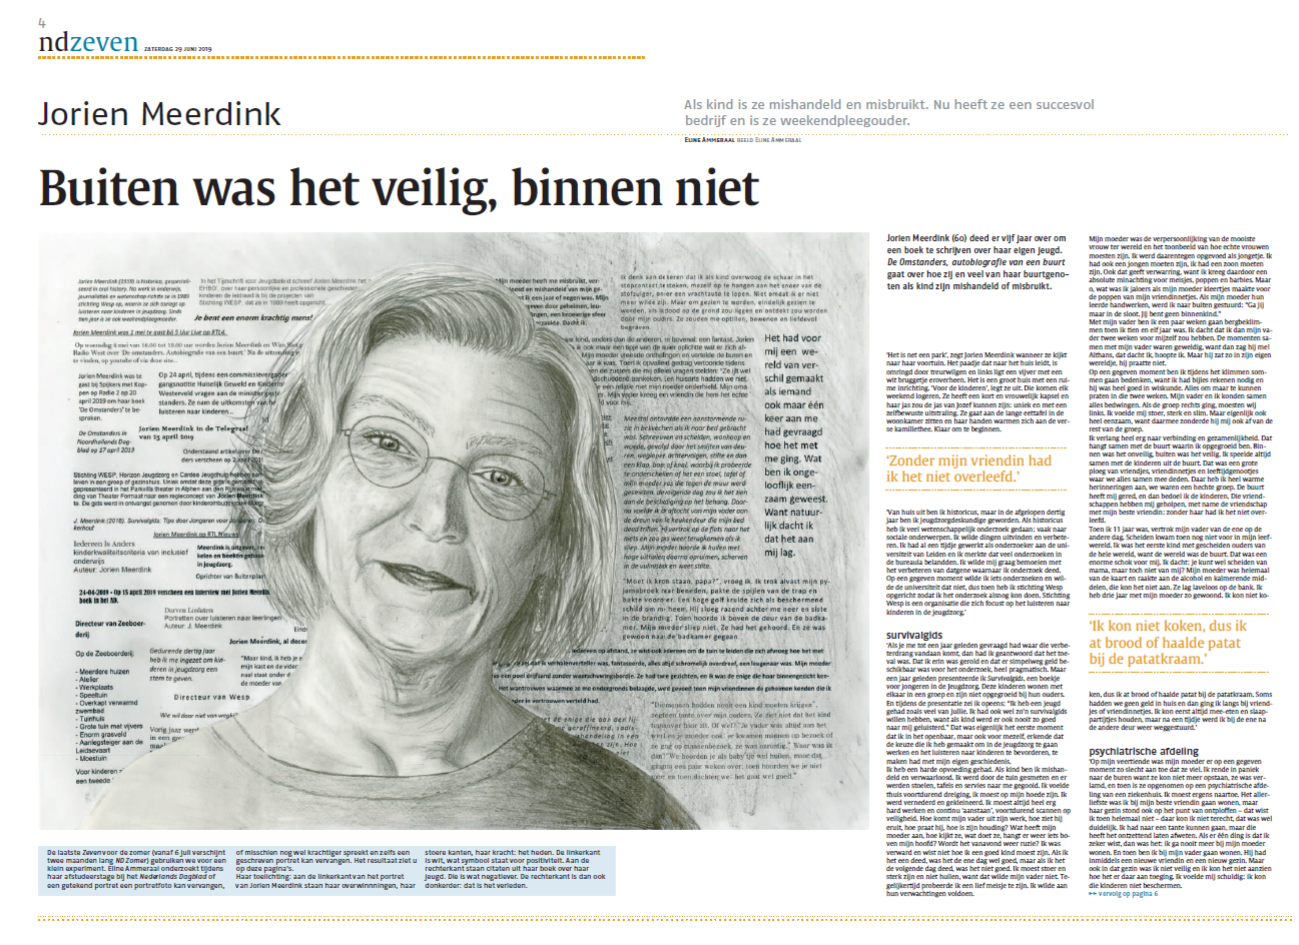 Artikel Jorien Meedink 'Buiten was het veilig, binnen niet' Nederlands Dagblad 29 juni 2019